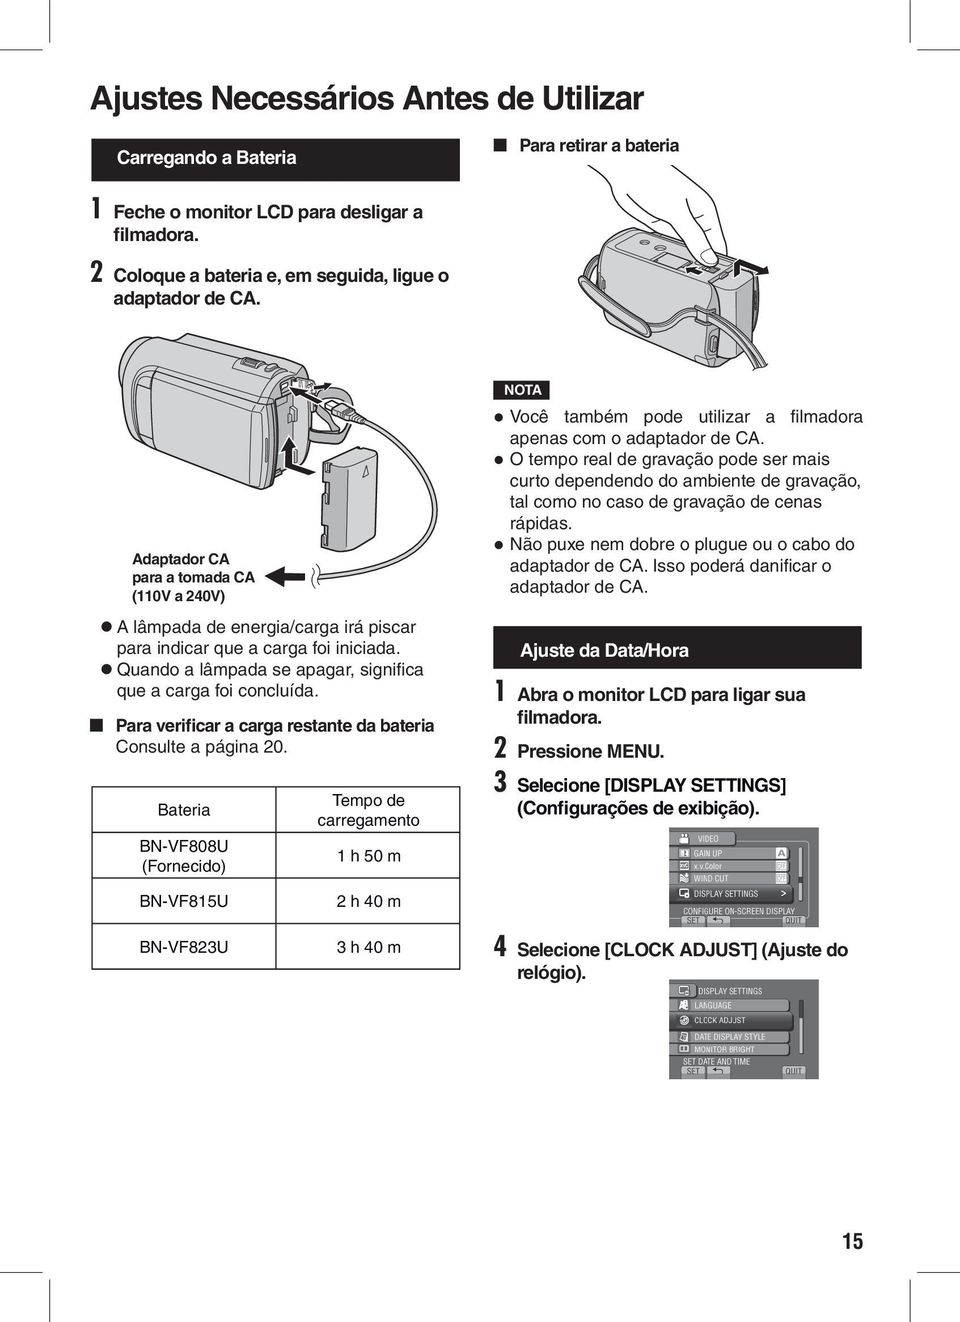 Para verificar a carga restante da bateria Consulte a página 20. Bateria BN-VF808U (Fornecido) Tempo de carregamento 1 h 50 m Você também pode utilizar a filmadora apenas com o adaptador de CA.